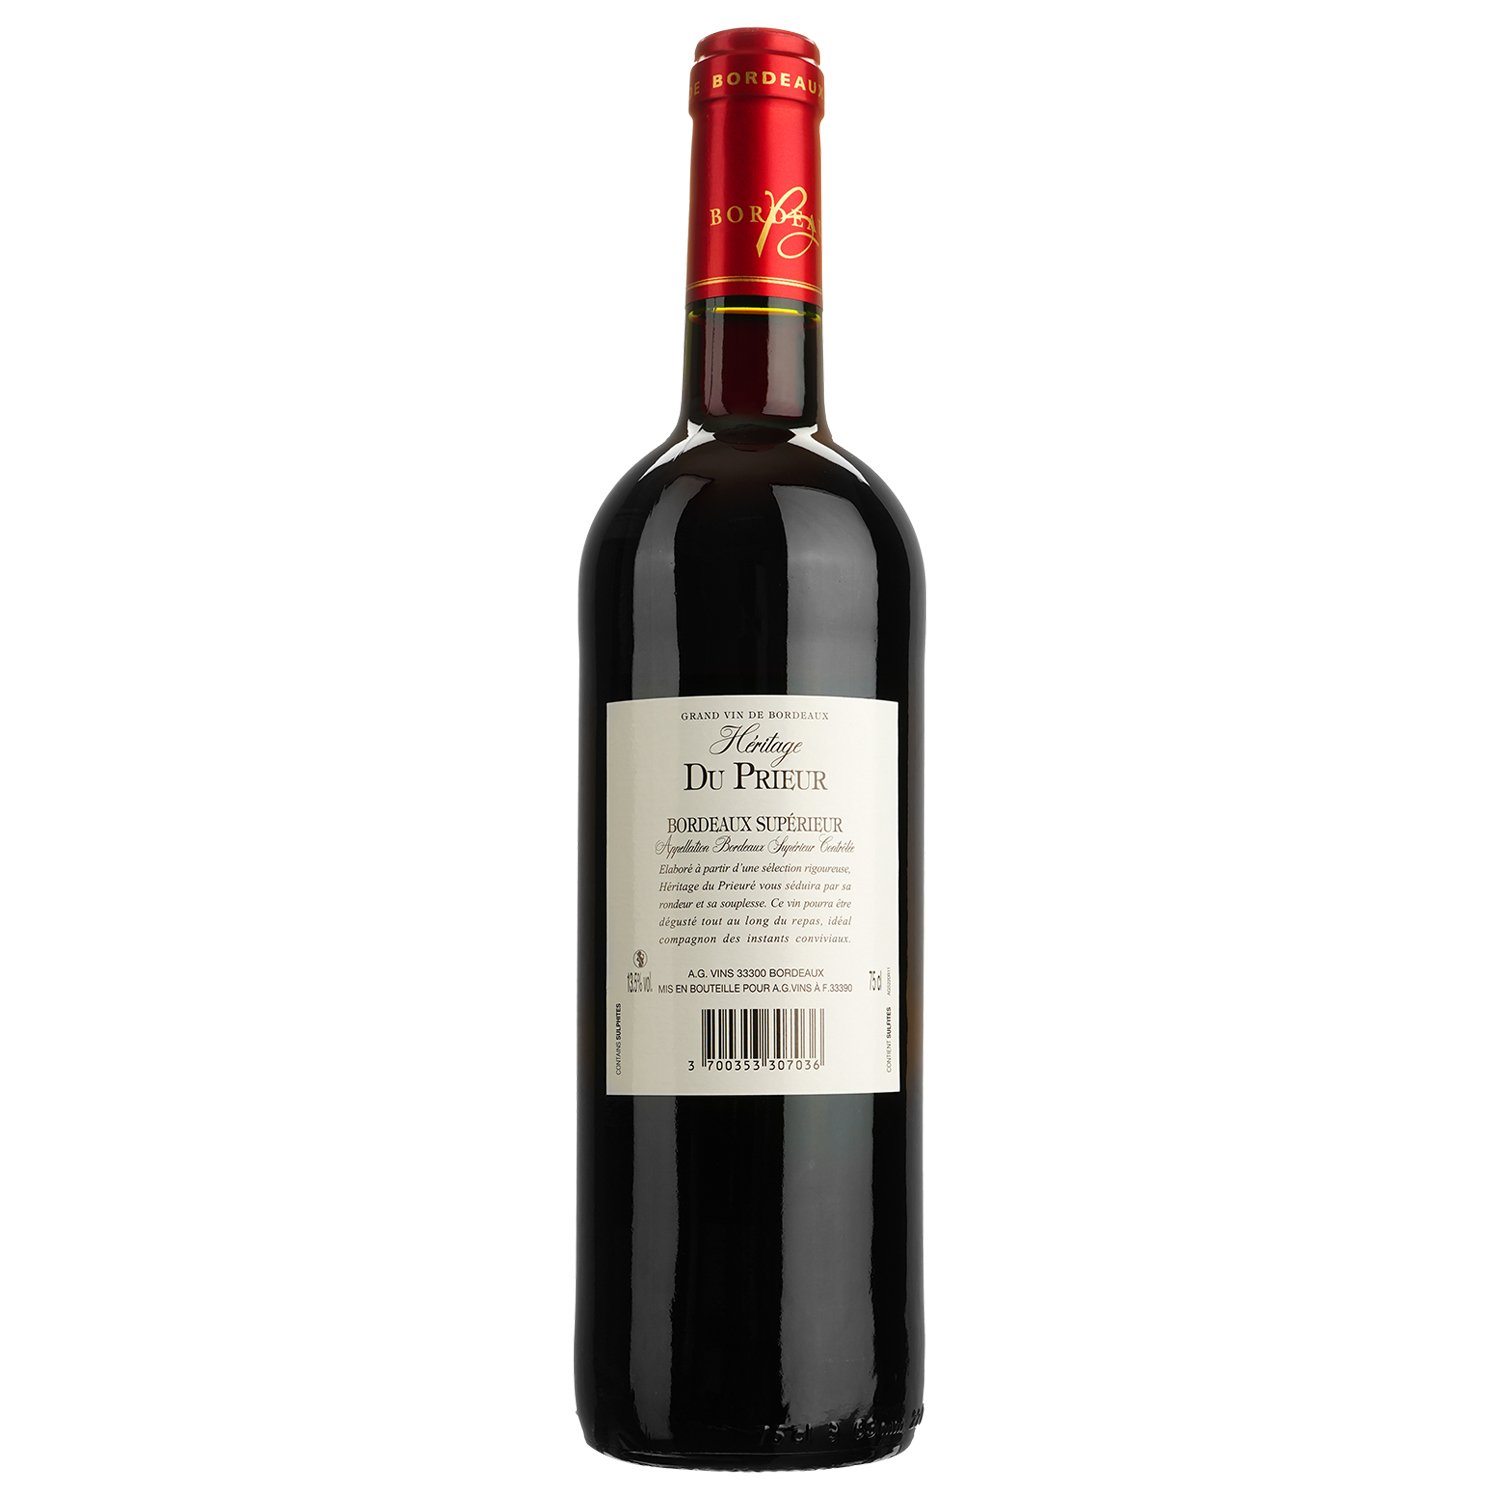 Вино Heritage Du Prieur Bordeaux Superieur AOP, красное, сухое, 0,75 л - фото 2